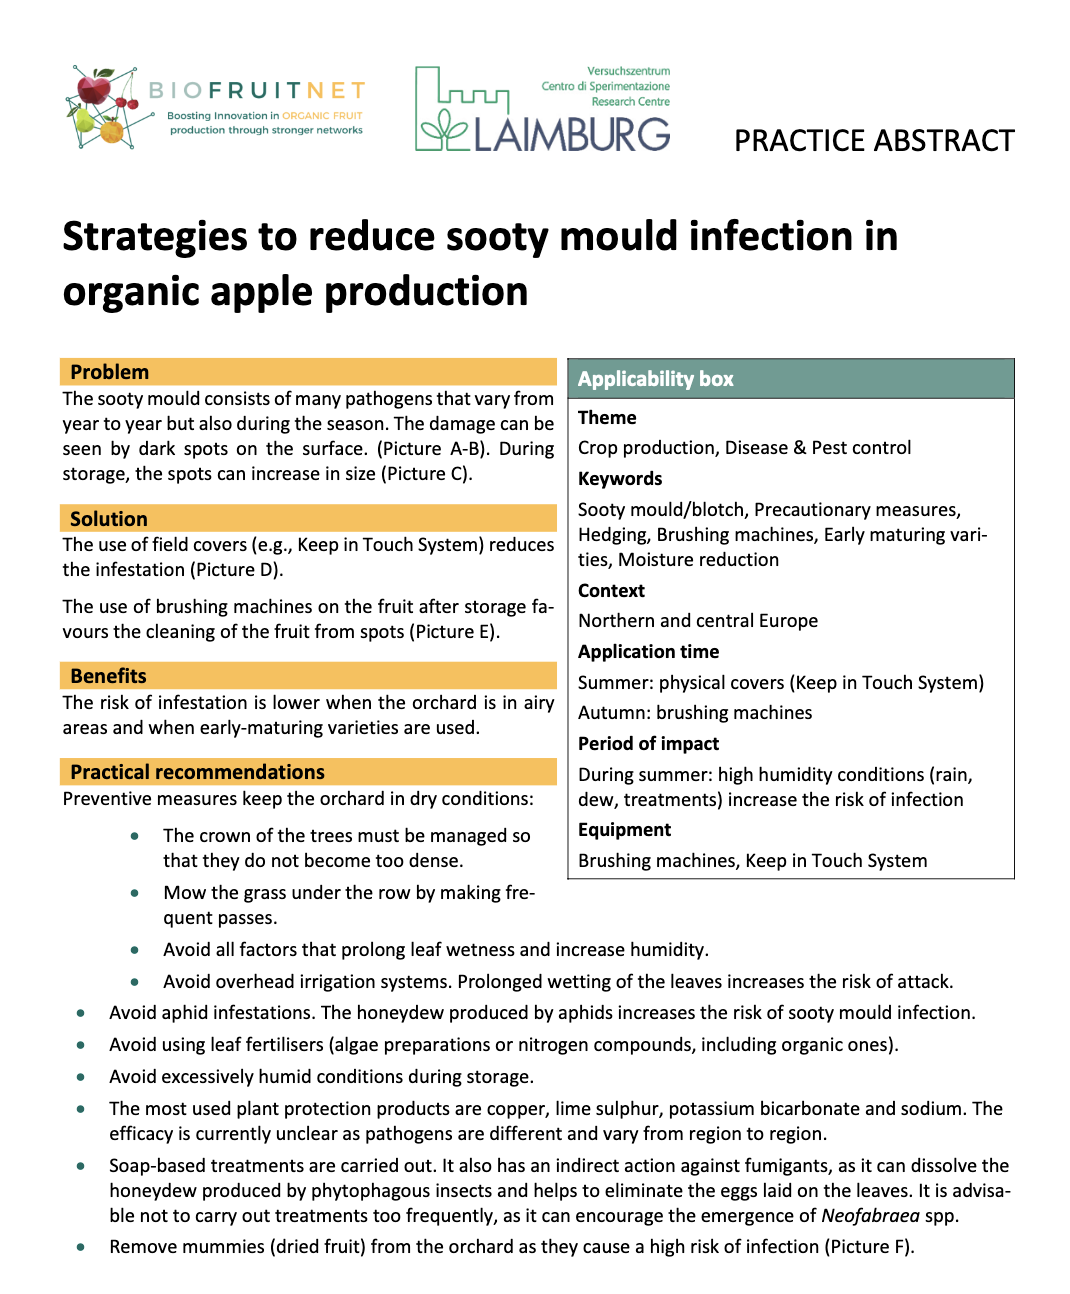 Стратегии за намаляване на инфекцията със саждиста плесен в органичното производство на ябълки (Резюме от практиката на BIOFRUITNET)